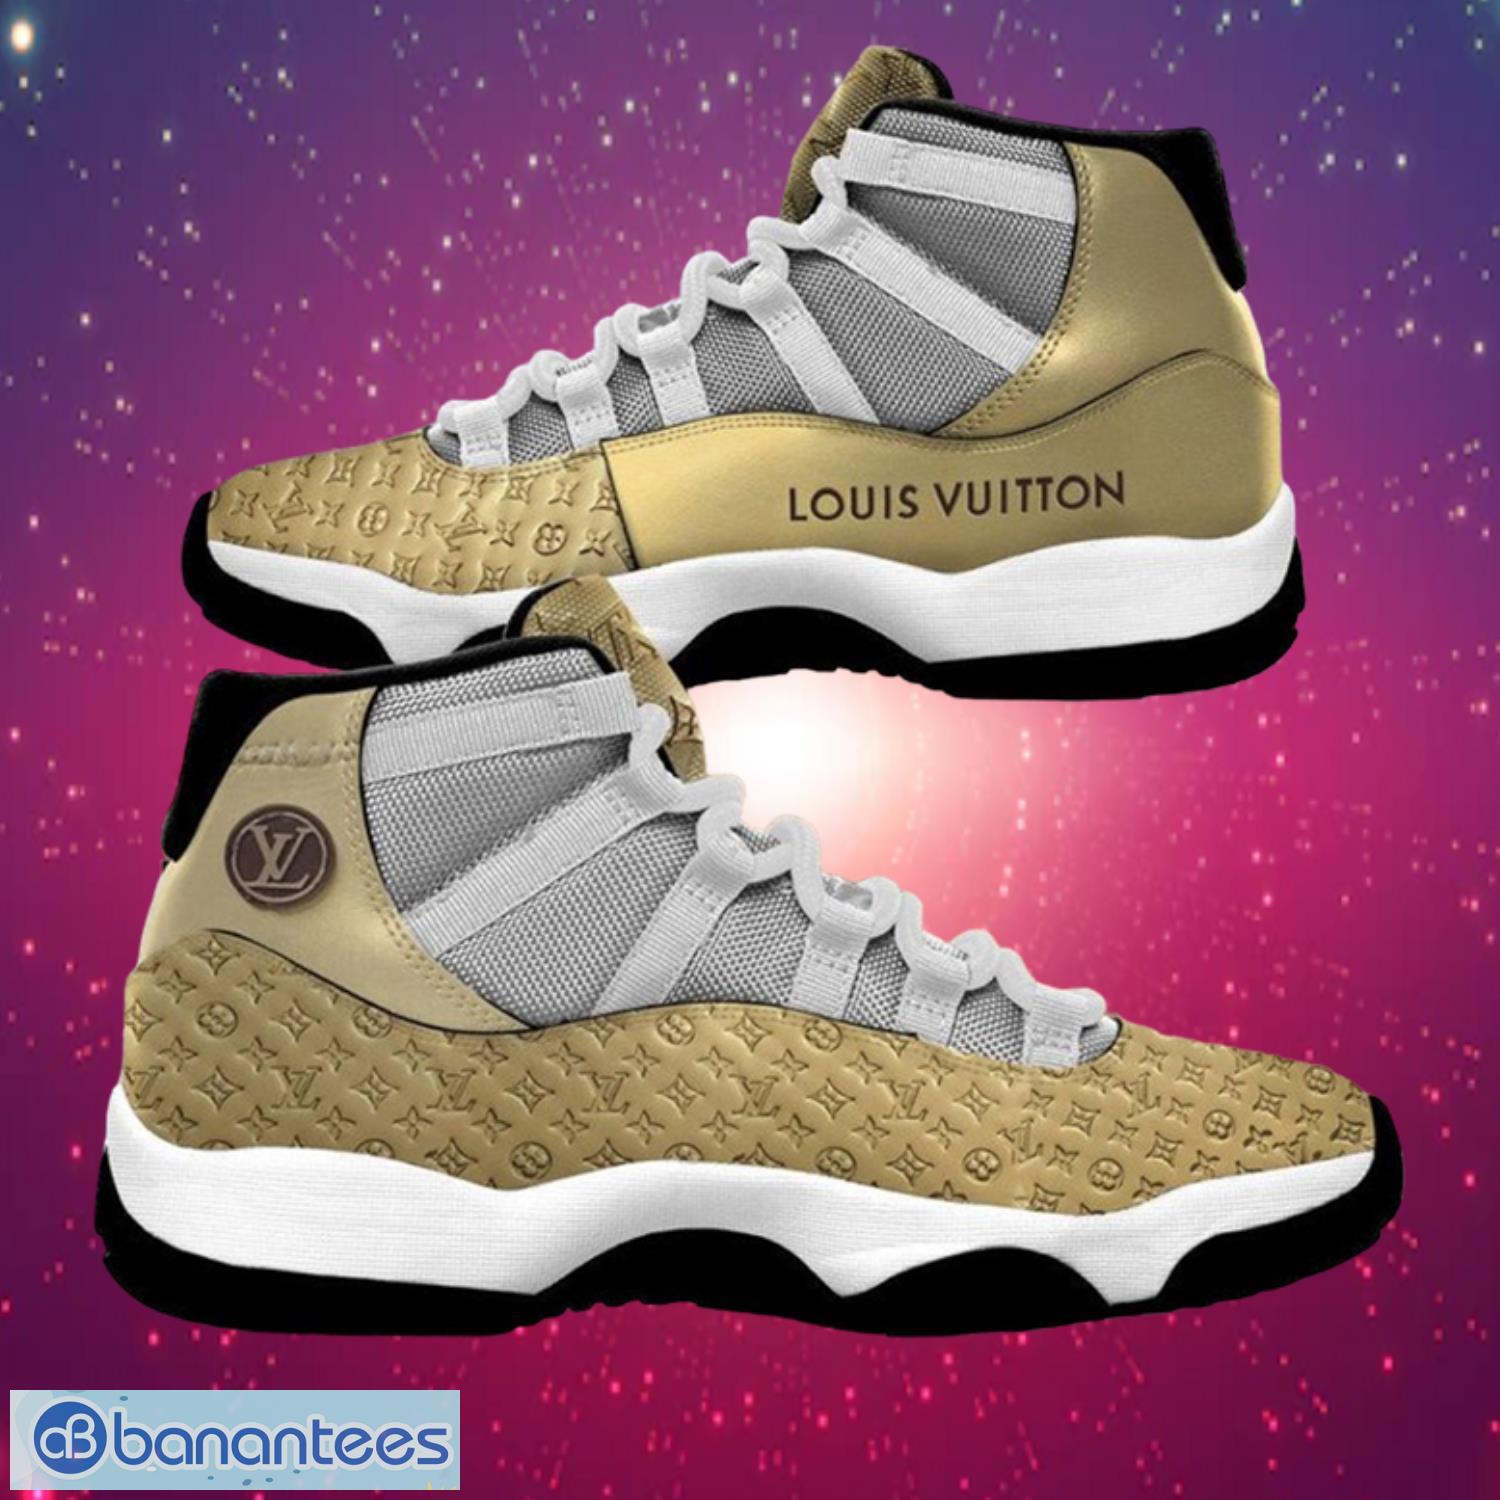 Louis Vuitton Luxury Gold Air Jordan 11 Shoes Product Photo 1